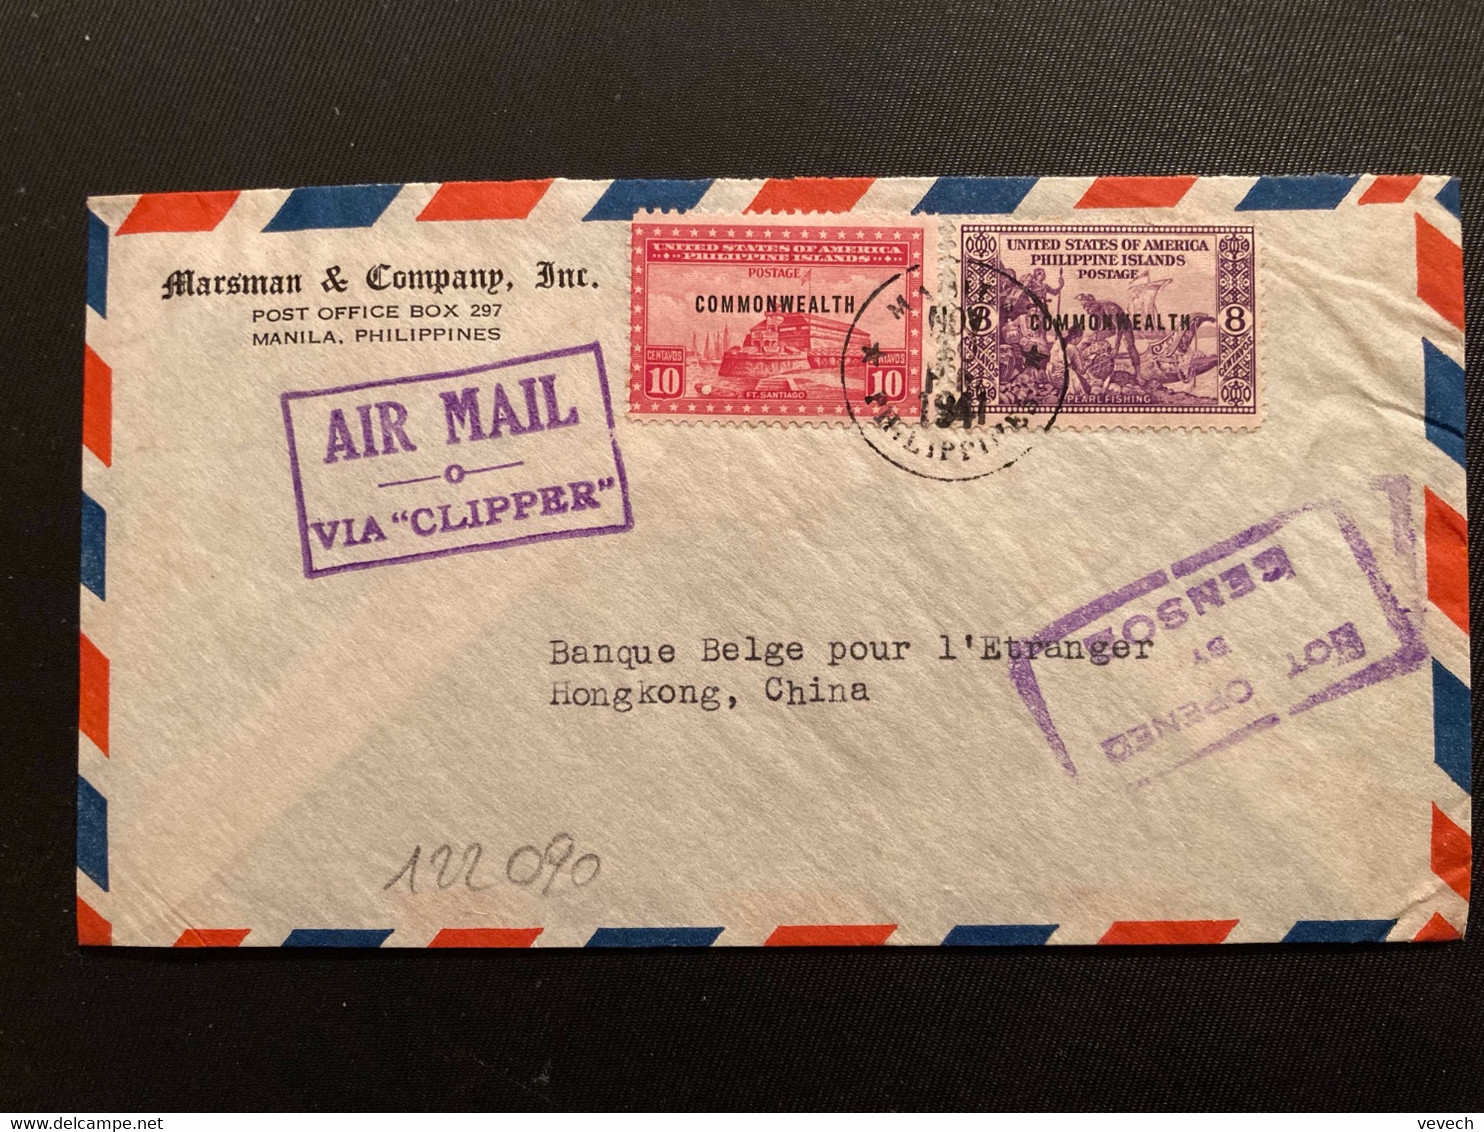 LETTRE Par Avion VIA "CLIPPER" Pour HONG KONG CHINE TP 10c + 8c Surchargé. COMMONWEALTH OBL.NOV 10 1941 MANILA + NOT OPE - Philippines